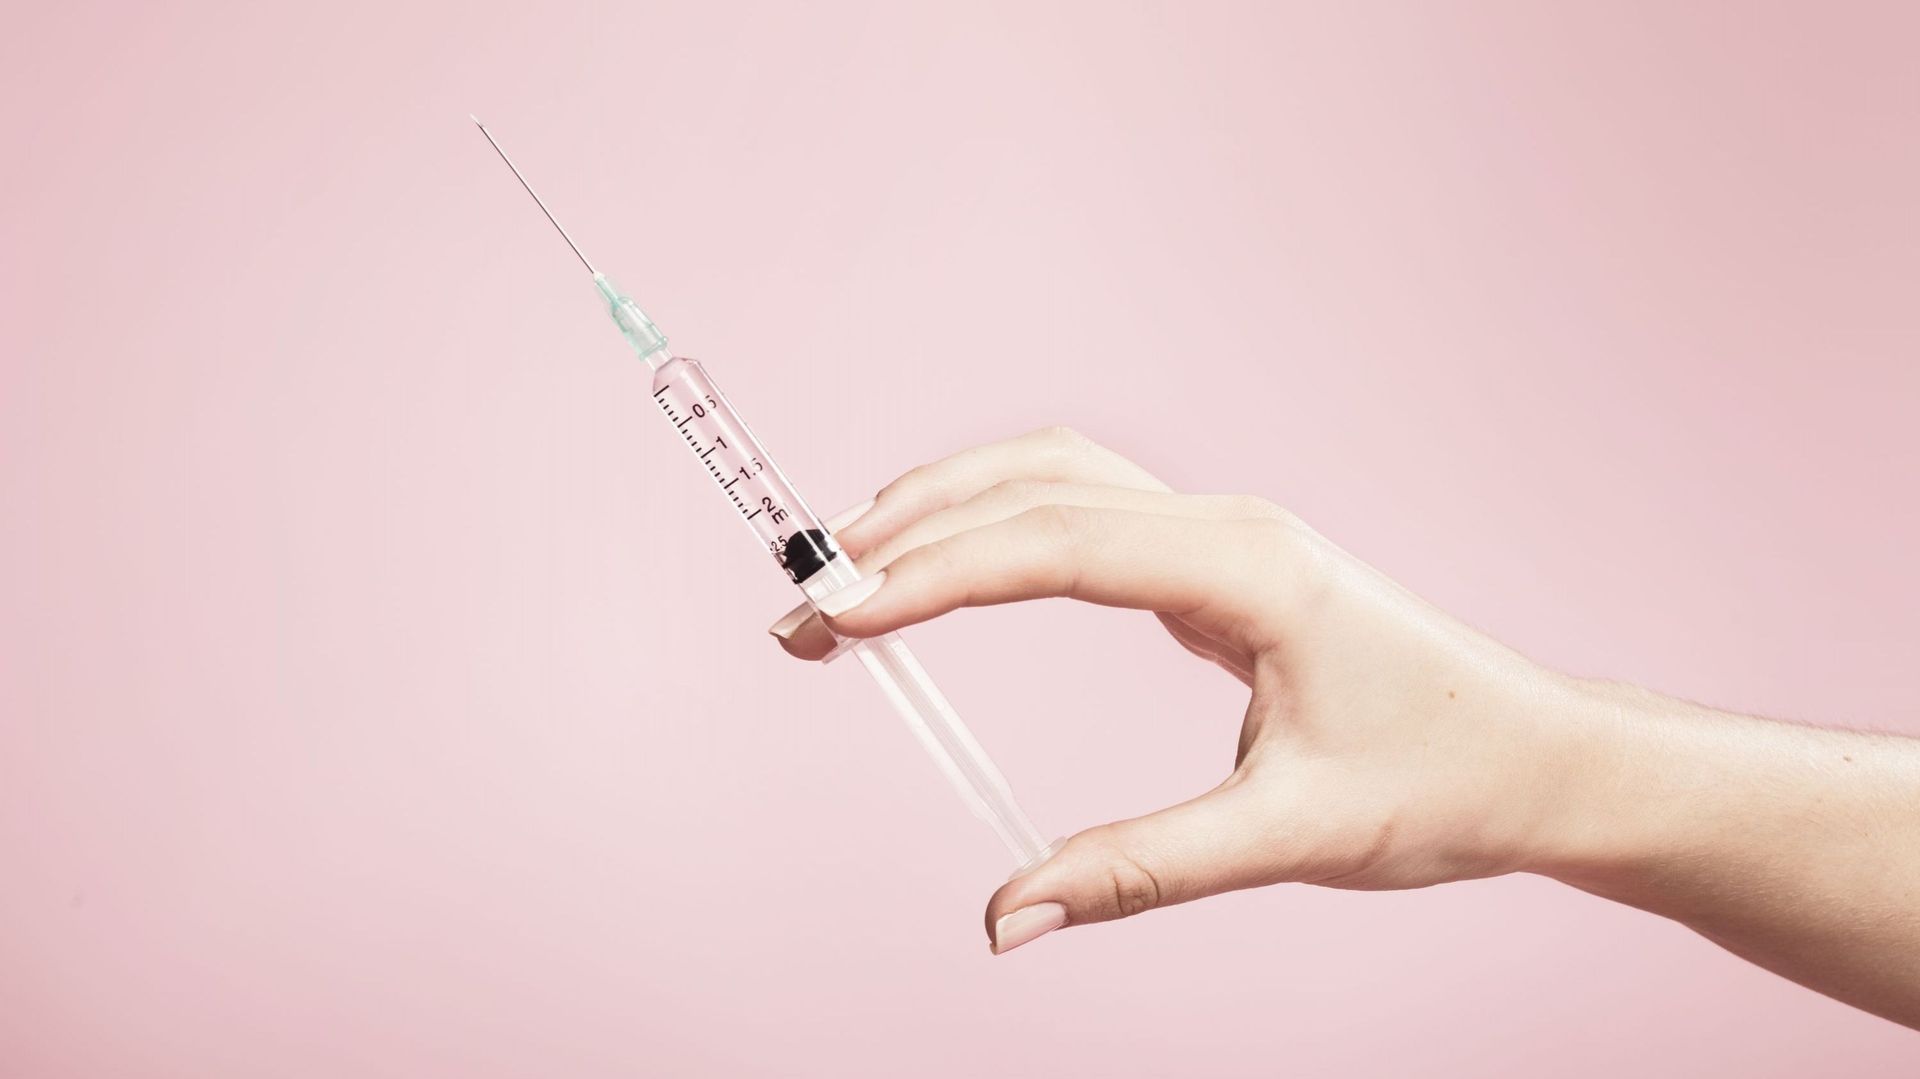 Une seringue de vaccination